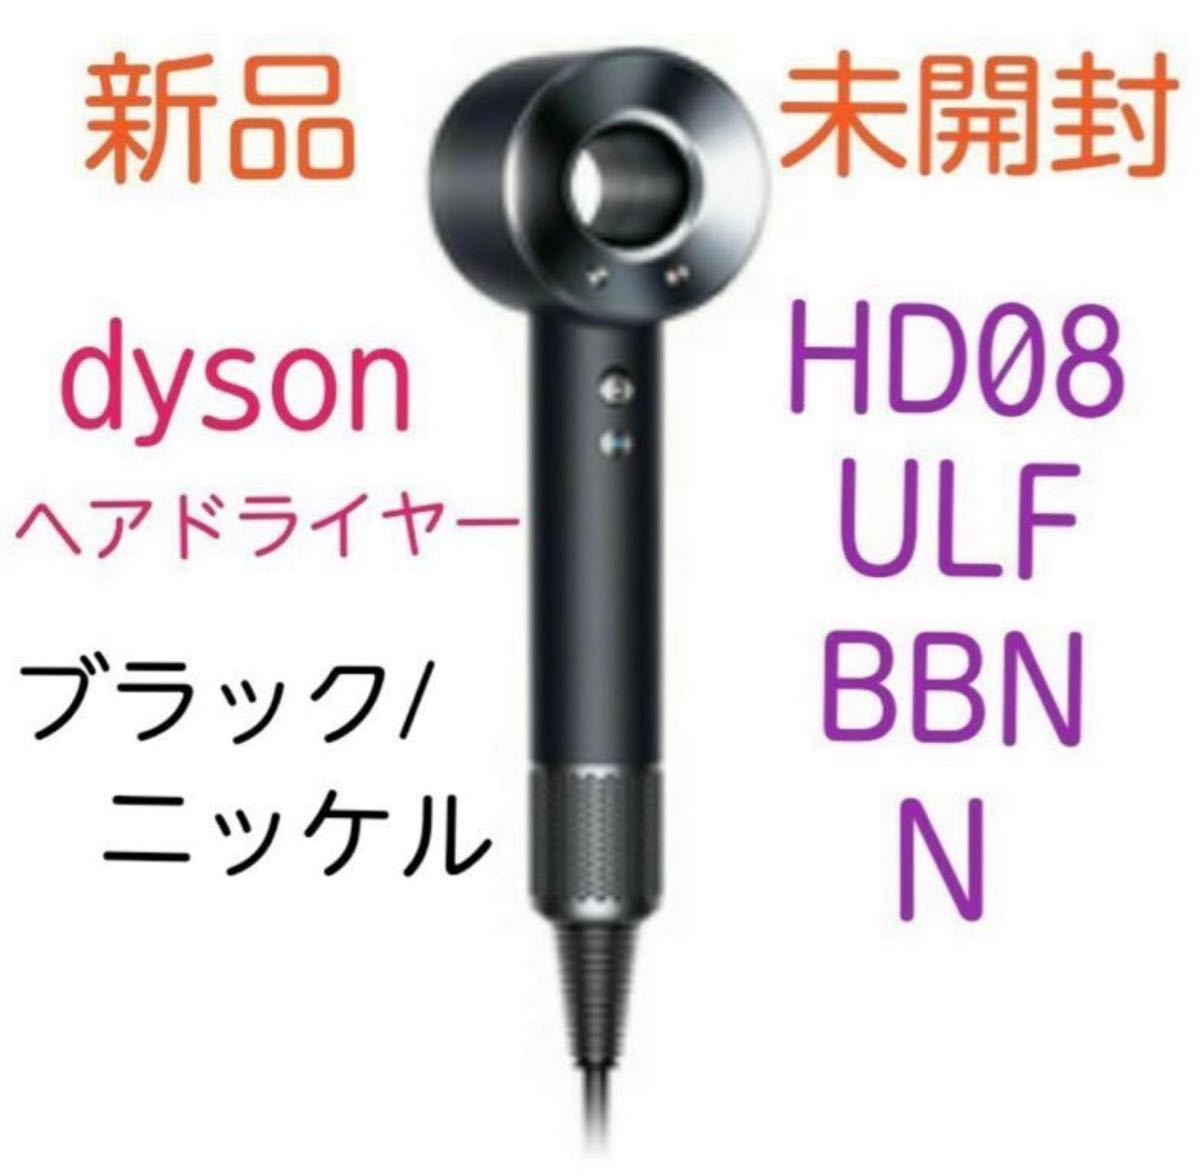 ダイソン スーパーソニック イオニック HD08 ULF BBN ブラック